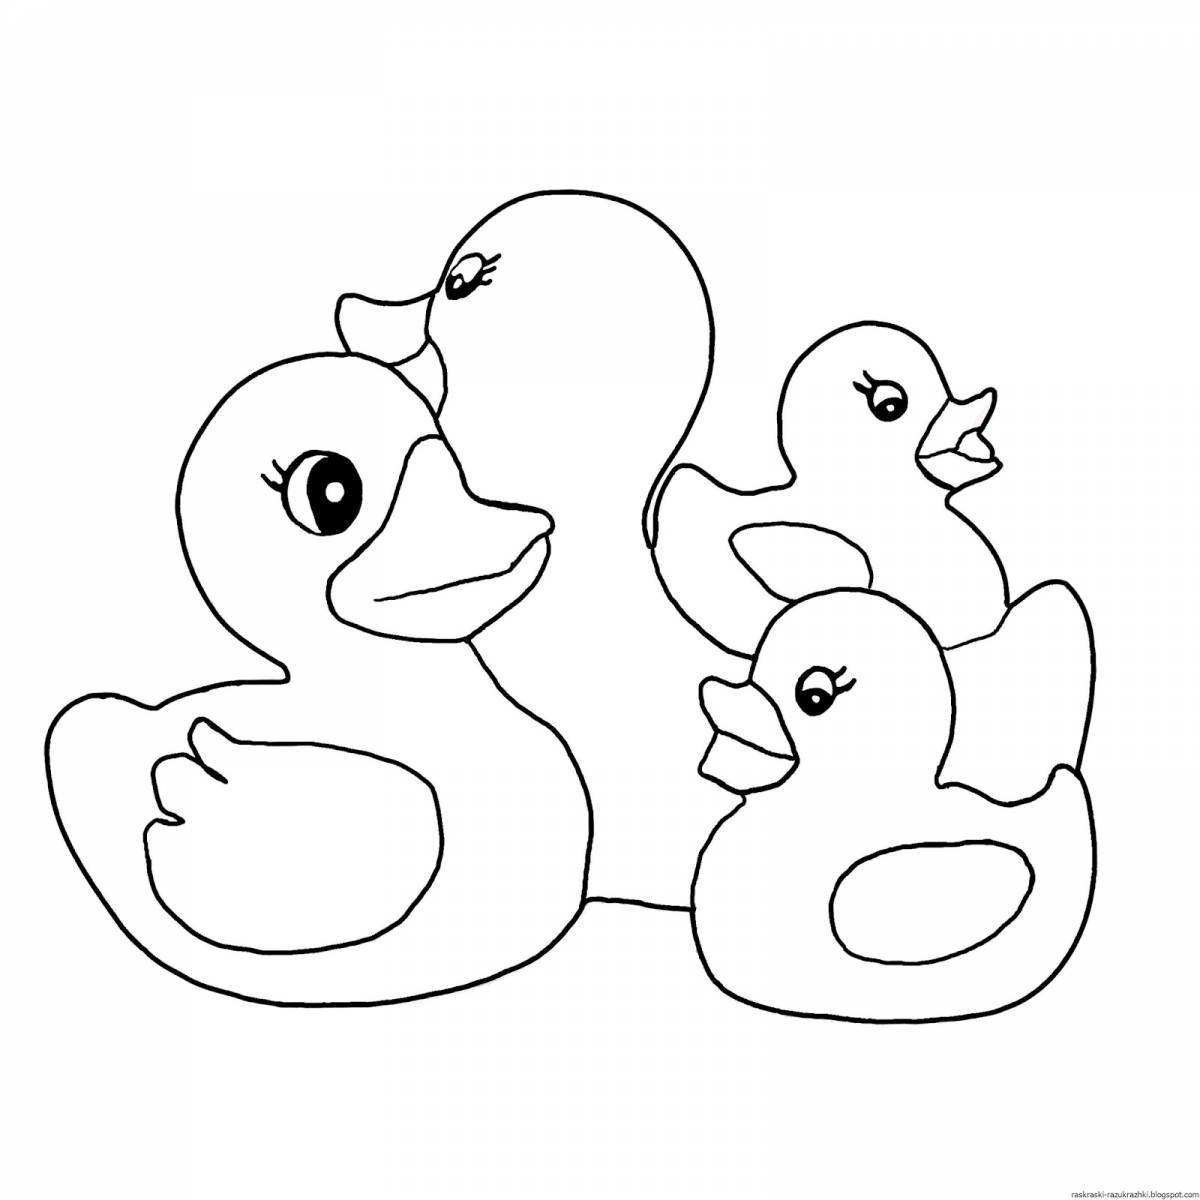 Раскраска «игривая утка» для детей